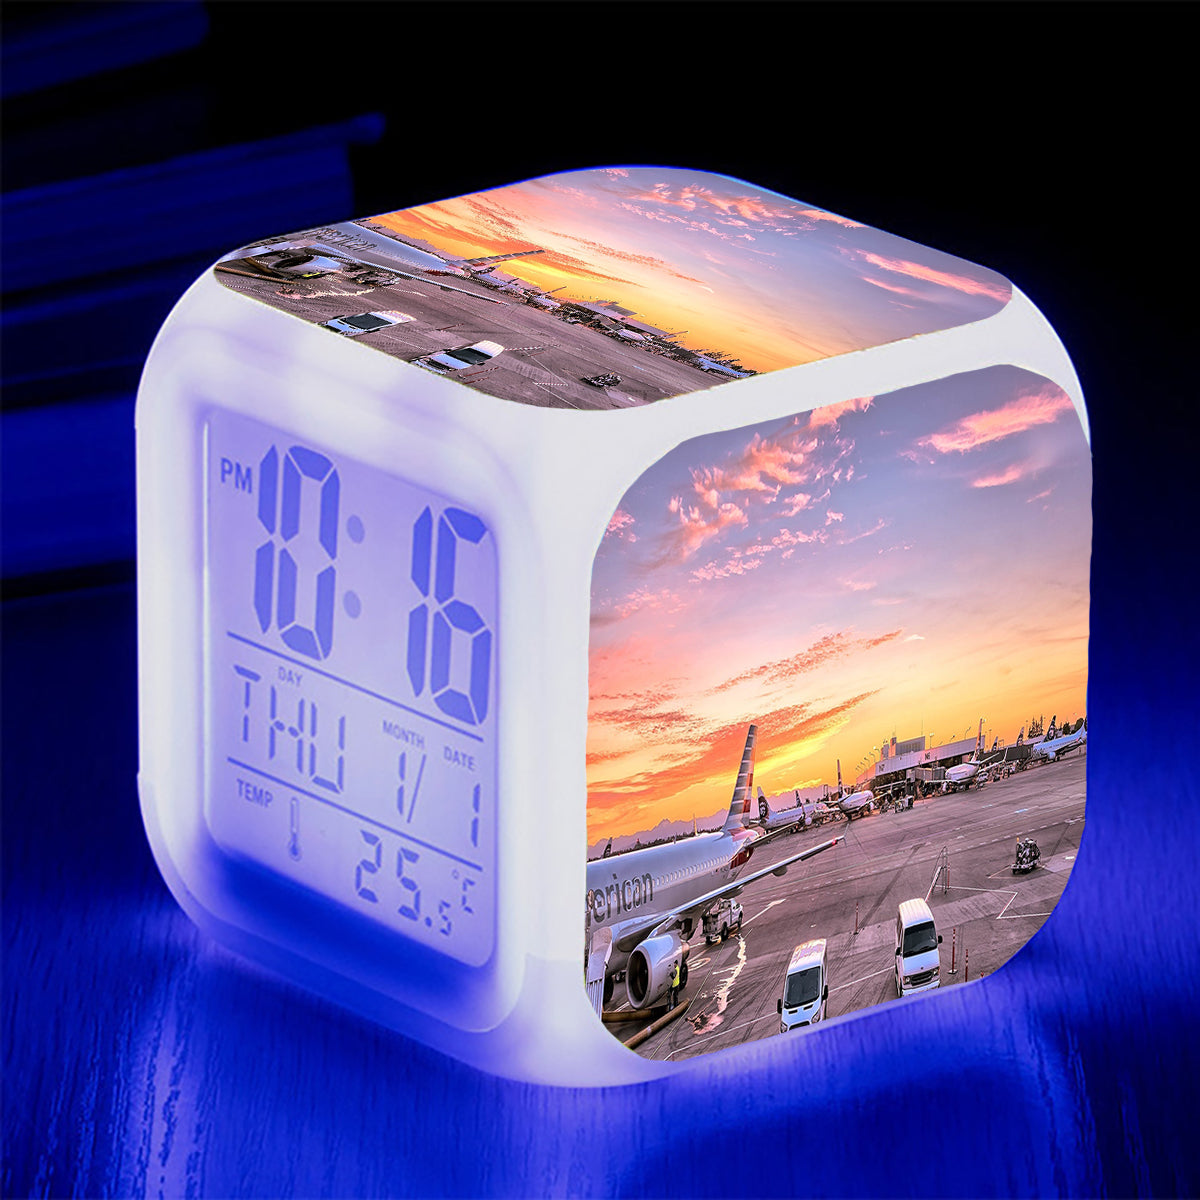 Airport Photo During Sunset Designed "7 Colour" Digital Alarm Clock